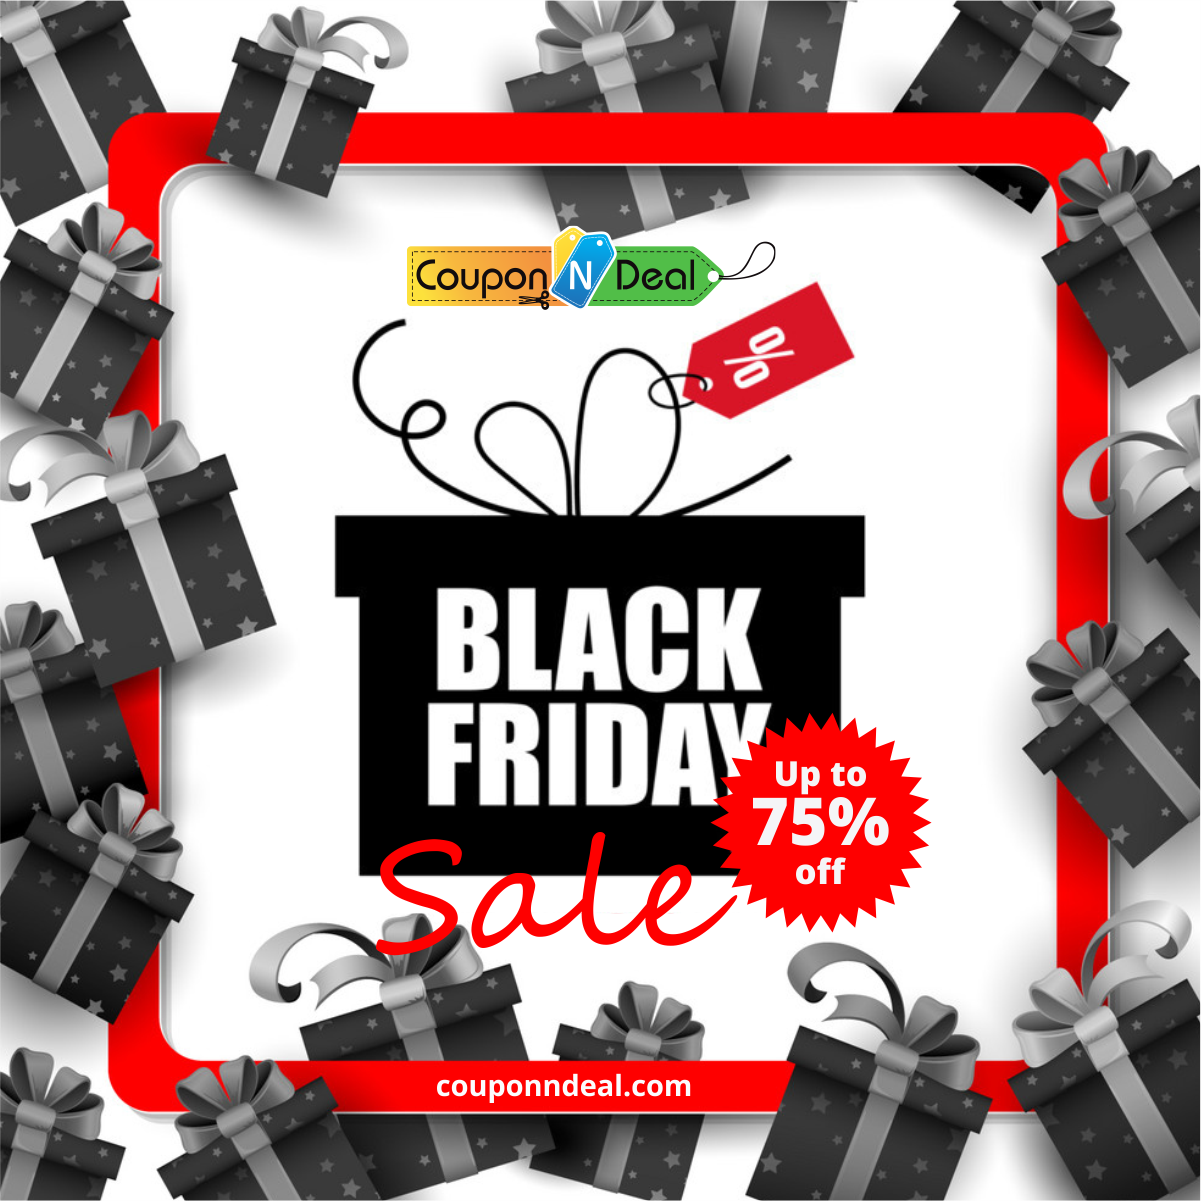 Black Friday deals sales